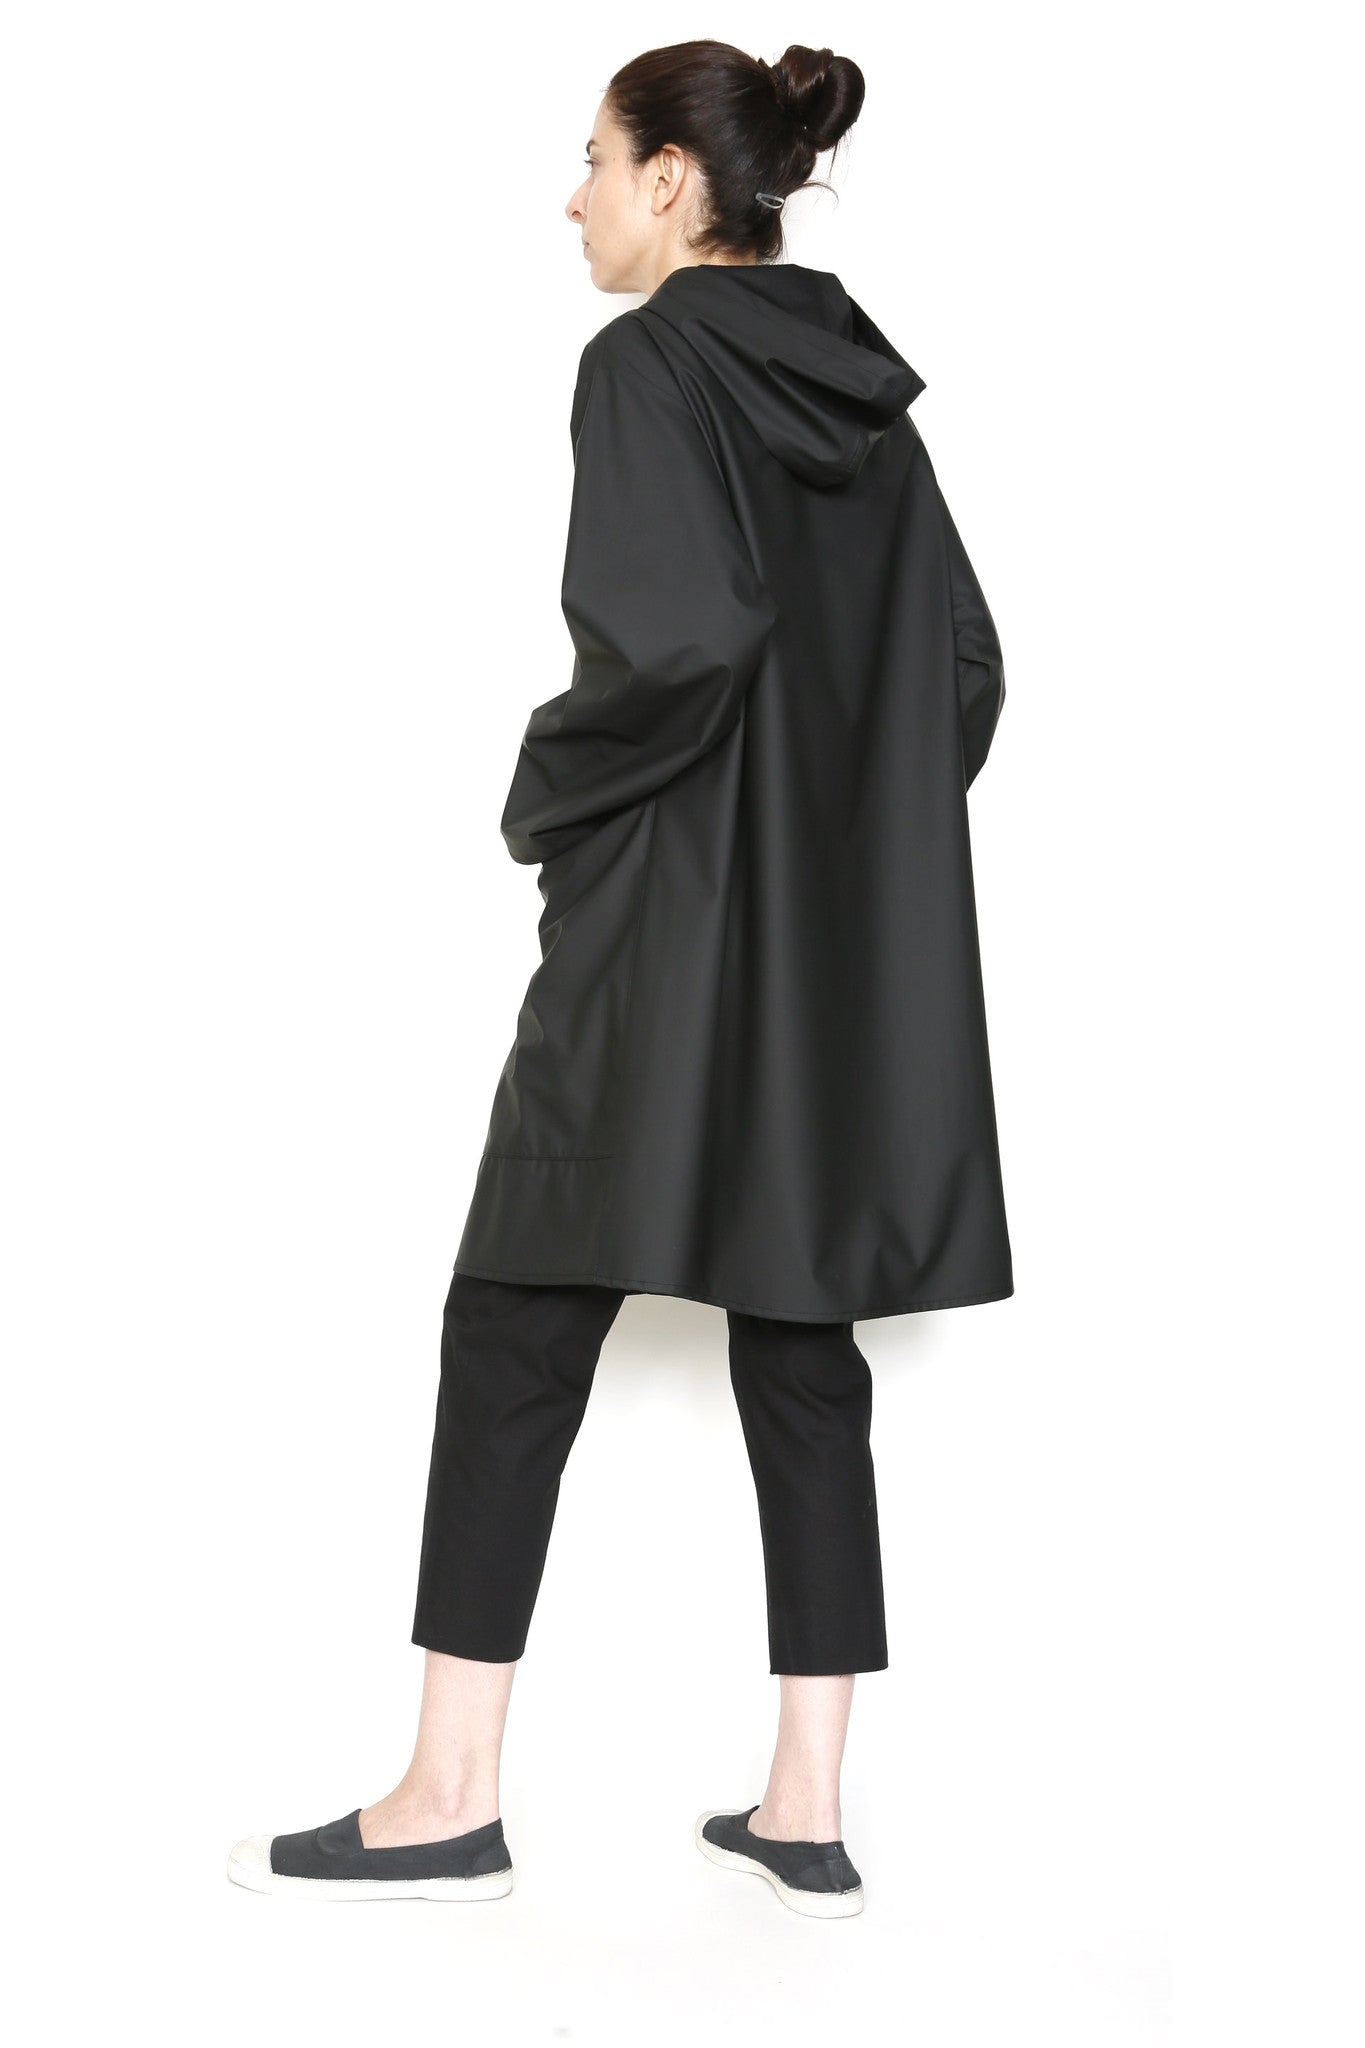 Zip Front Hooded Rain Jacket in Water-Repellent Fabric-4